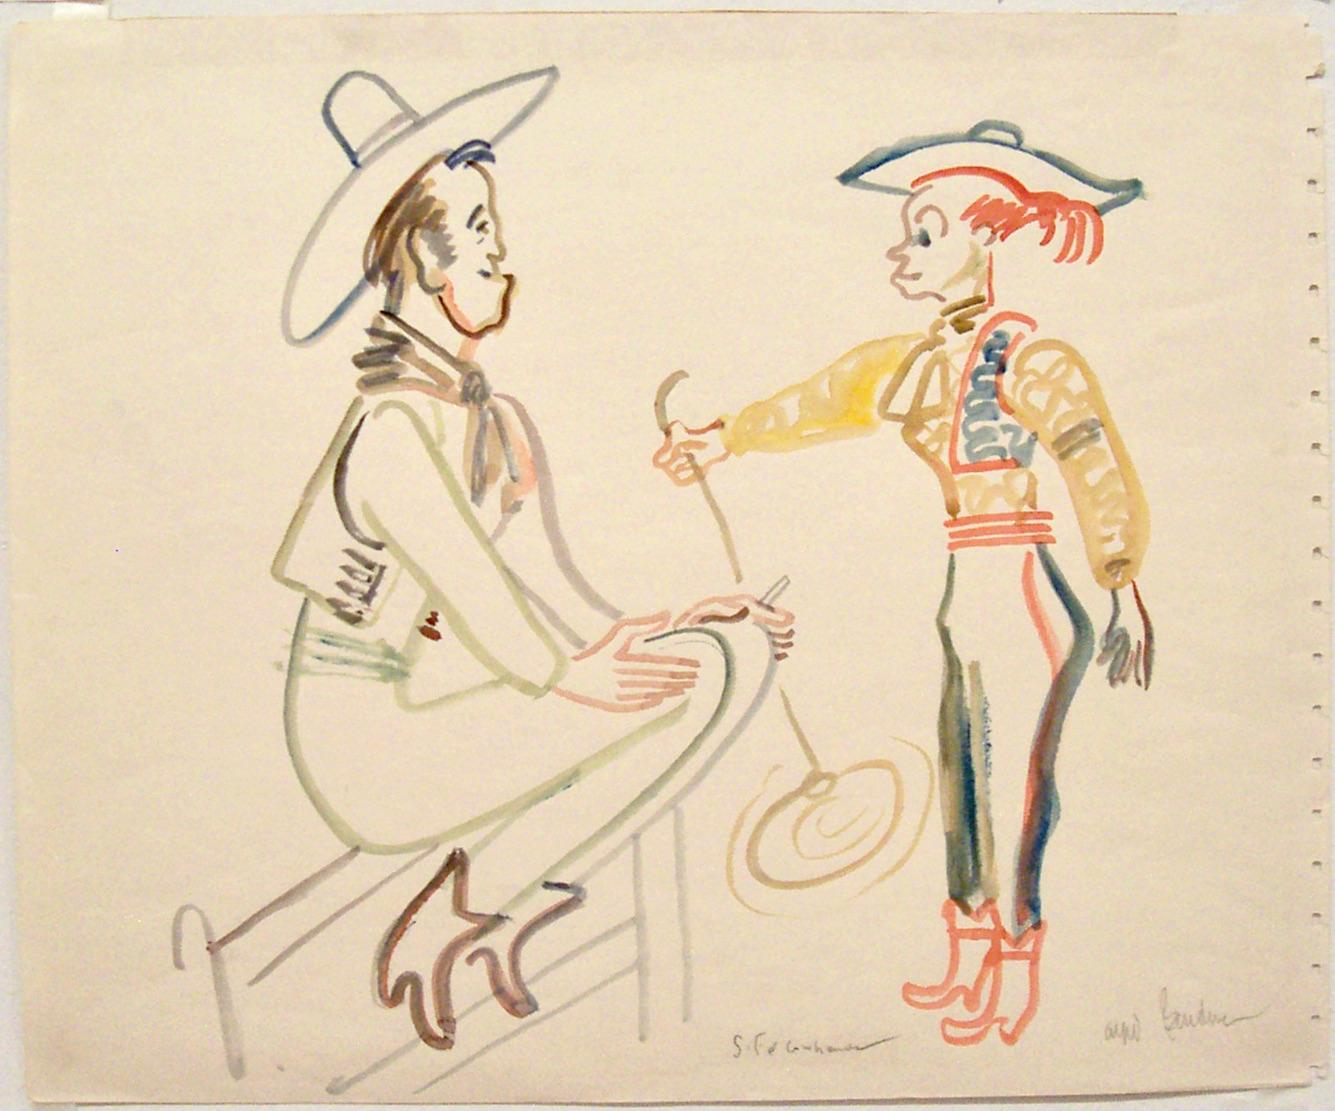 Offenbar hat Bendiner nie einen Tag ohne Zeichnung verbracht. Er war unglaublich!

In dieser Szene arbeitet ein junges "Cowgirl" mit dem Lasso, während ein "alter Cowboy" zusieht - natürlich mit einer Zigarette in der Hand.

Es ist mit Bleistift